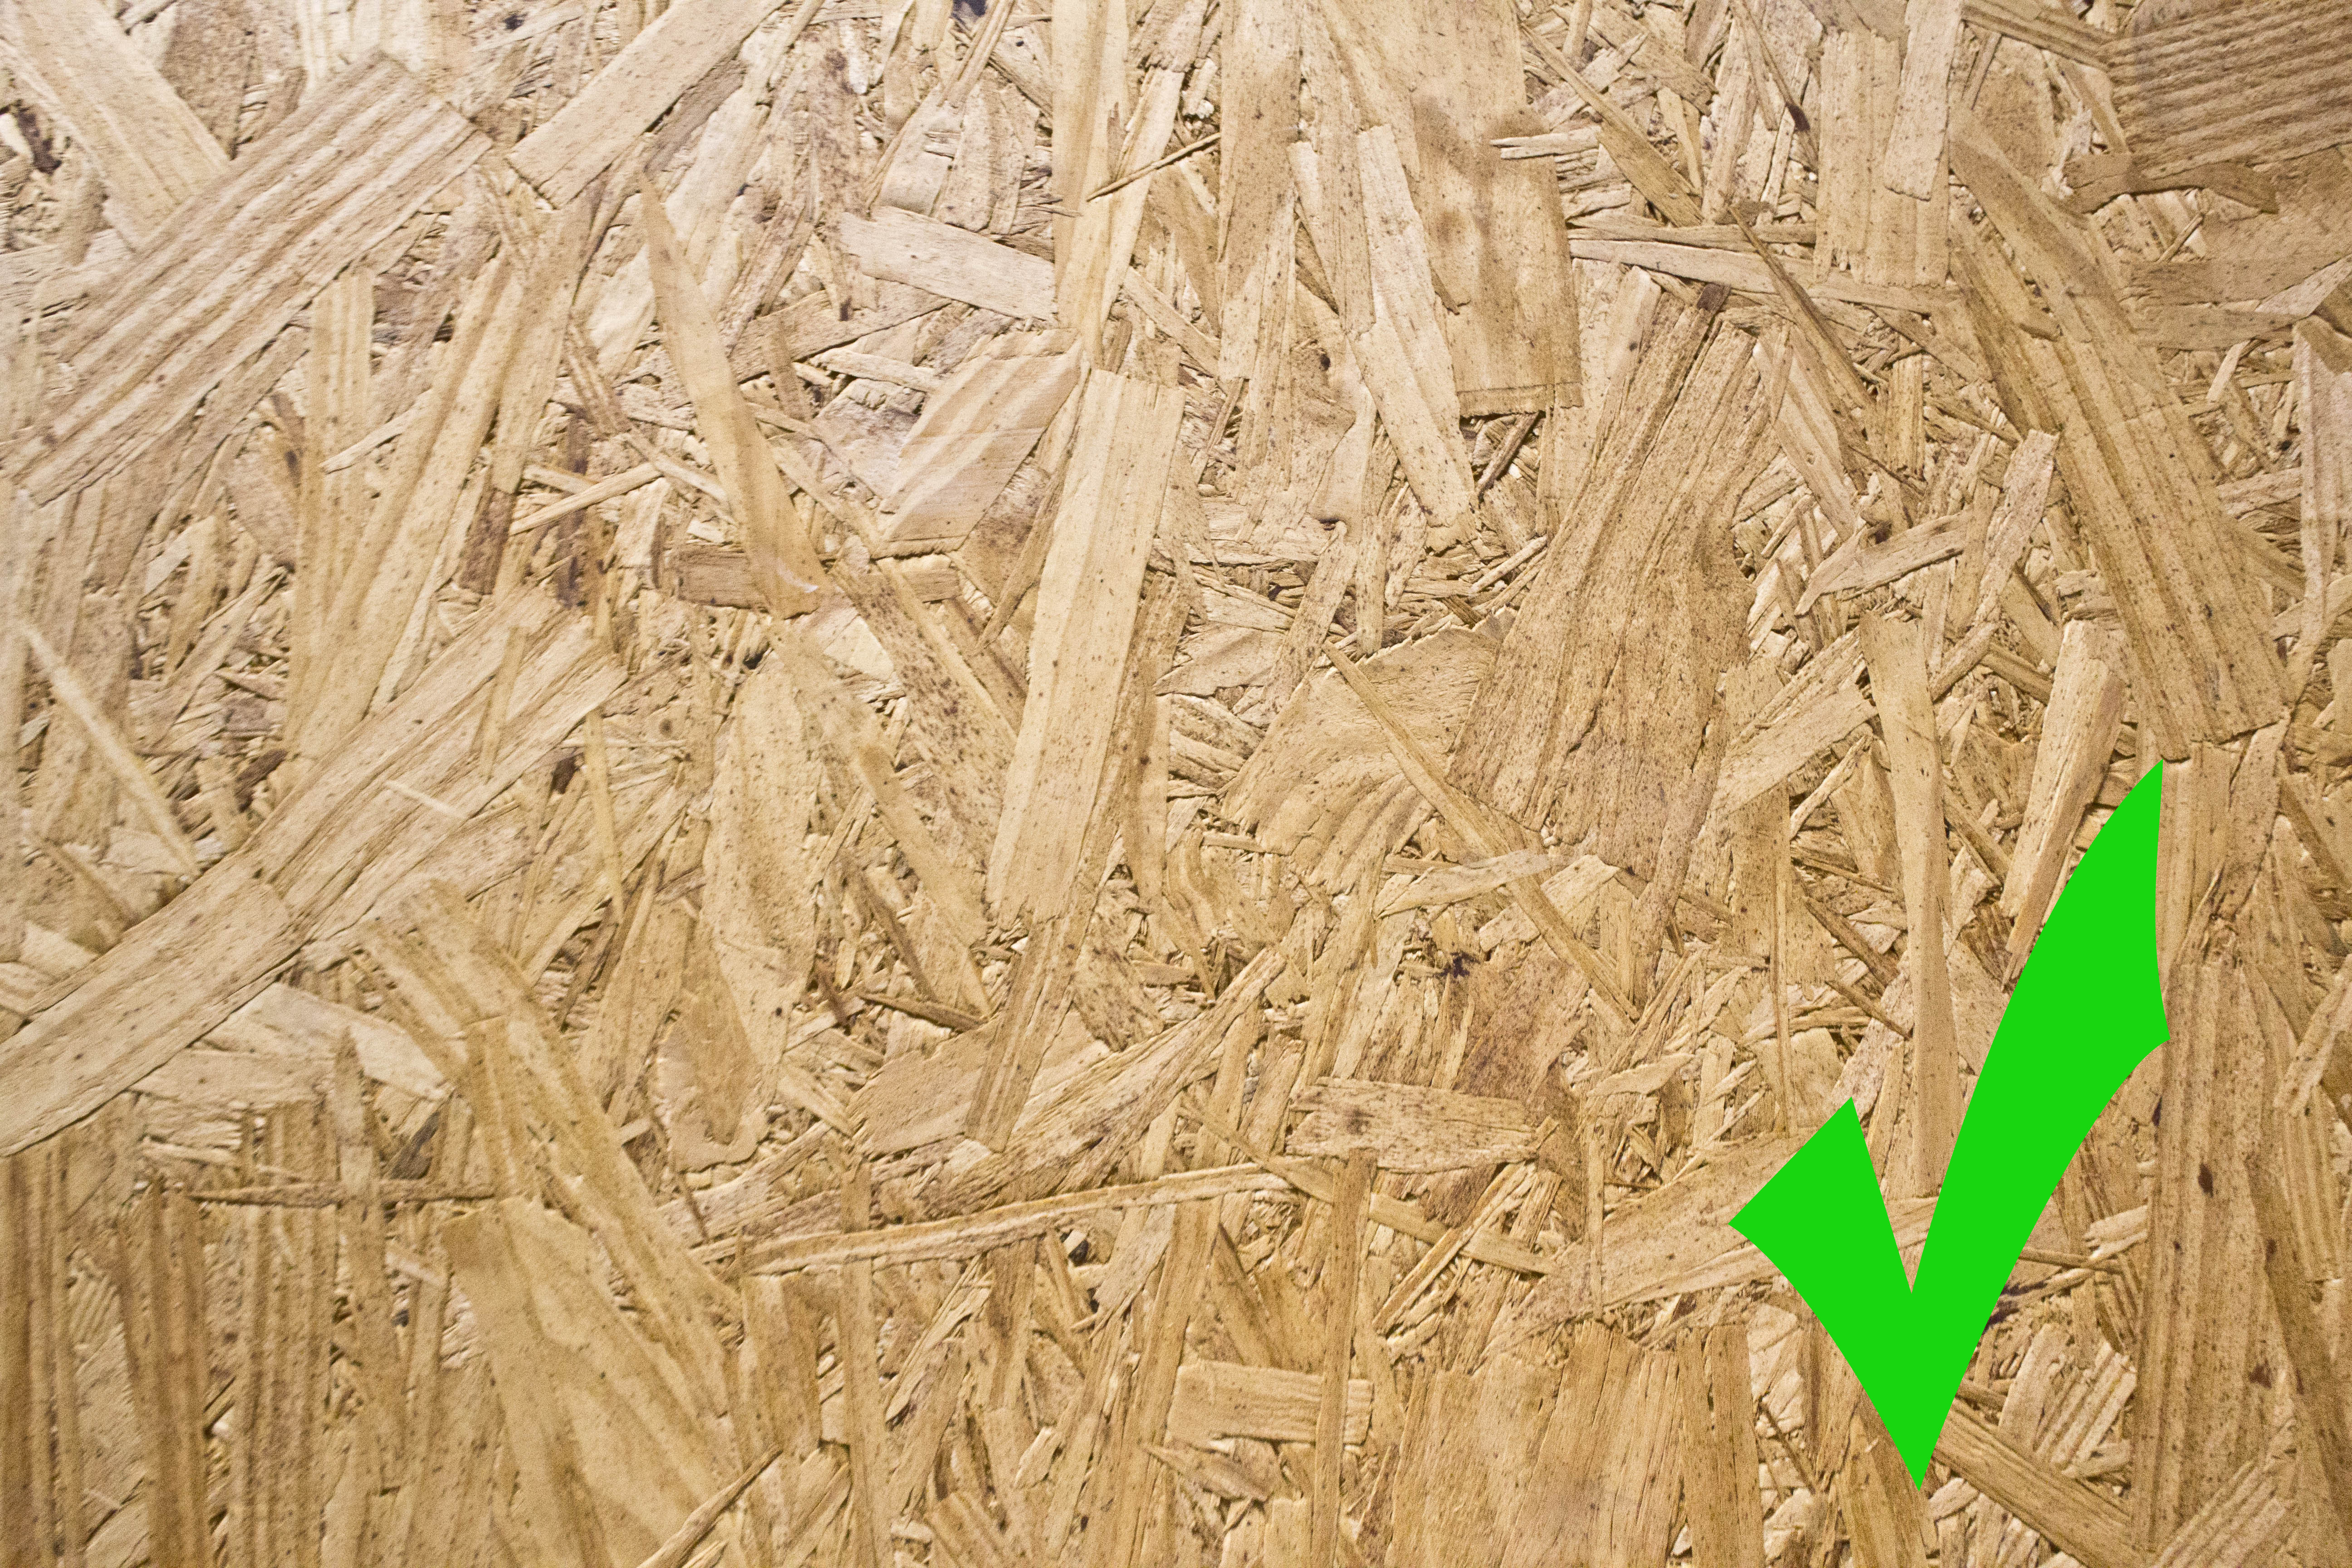 glue down hardwood floor underlayment of how to install vapor 3 in 1 silver underlayment within cement subfloor wood subfloor